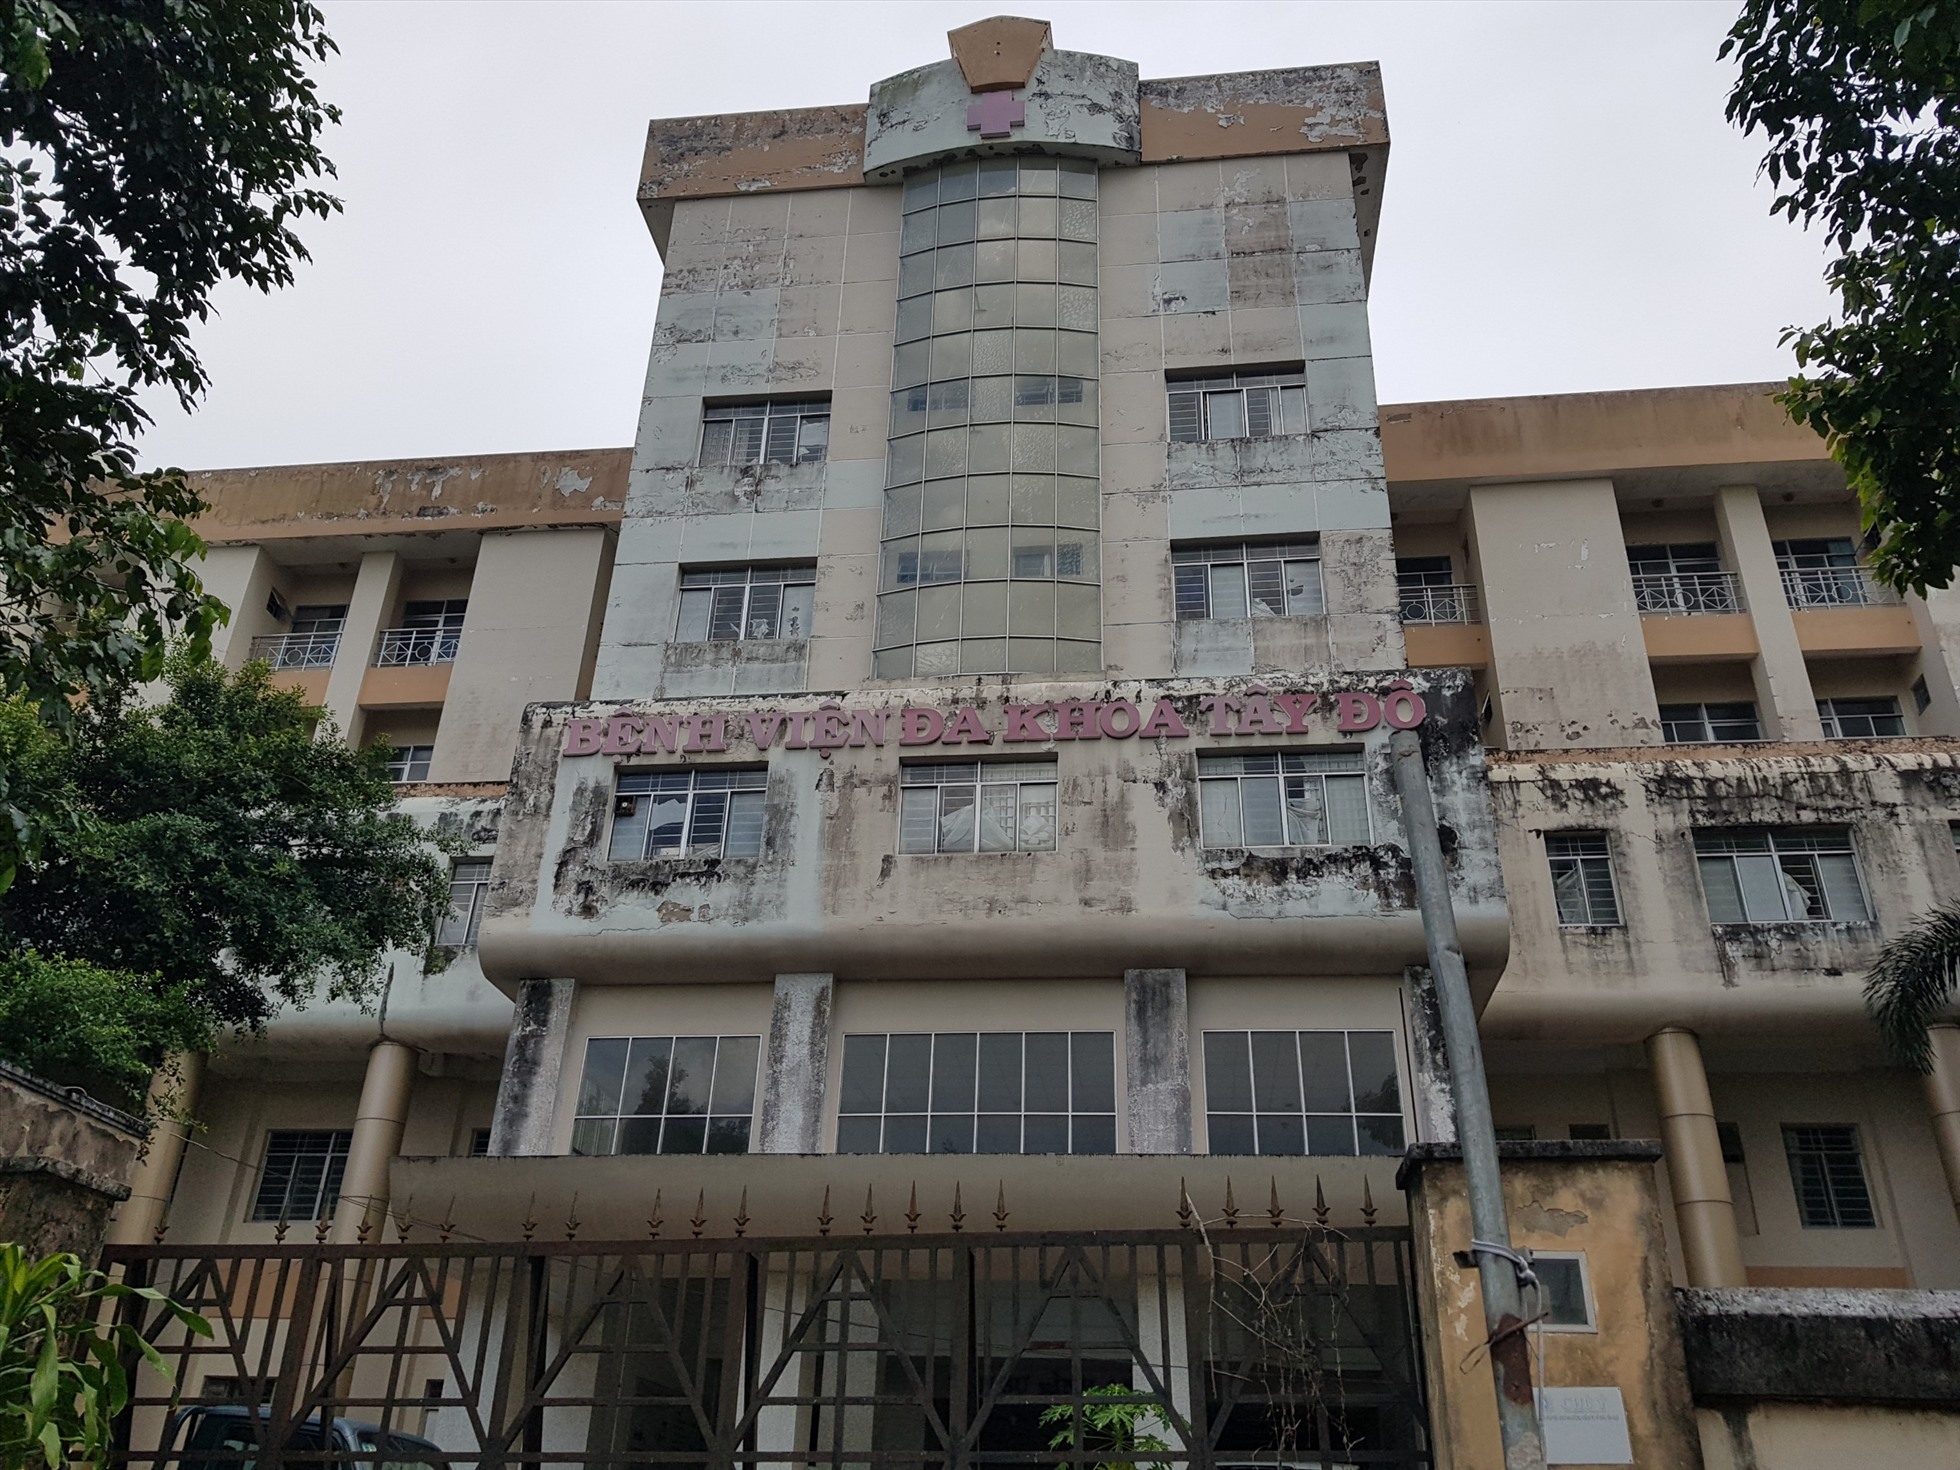 Ghi nhận của Báo Lao Động, trên địa bàn thành phố Cần Thơ hiện nay có hàng loạt trụ sở cũ, nhà khách, bệnh viện,… bị bỏ hoang.